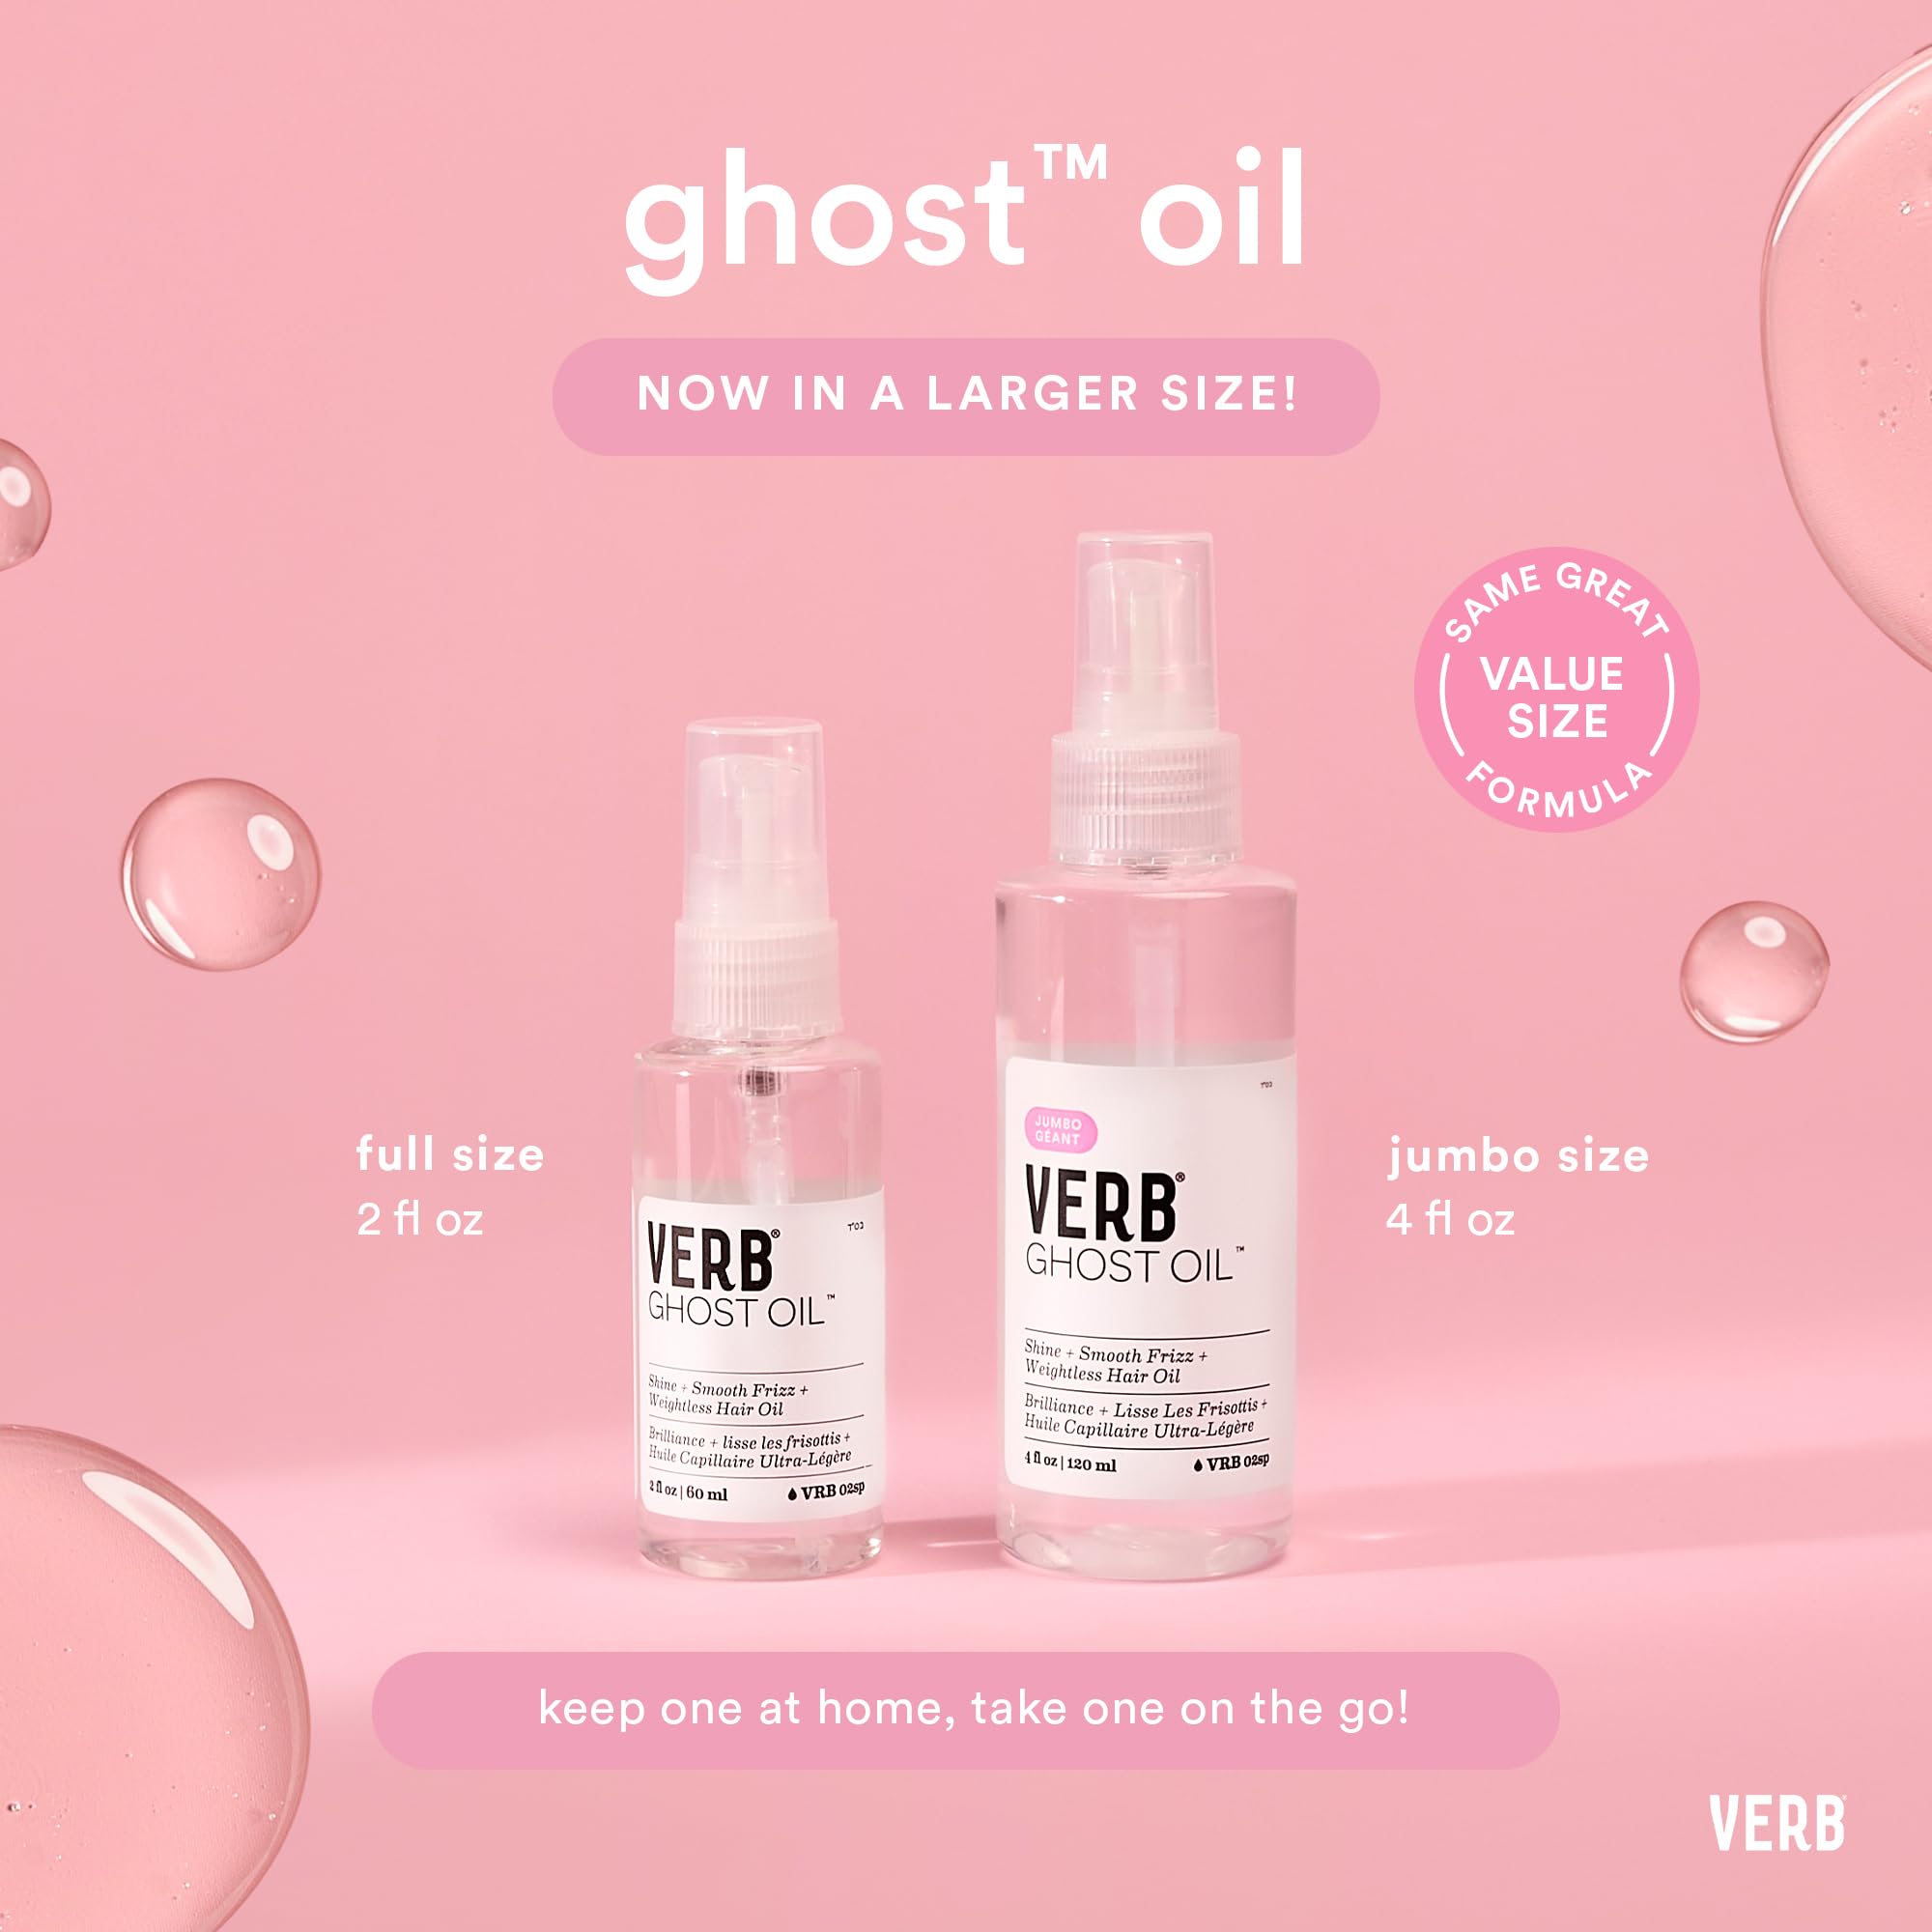 VERB Ghost Oil